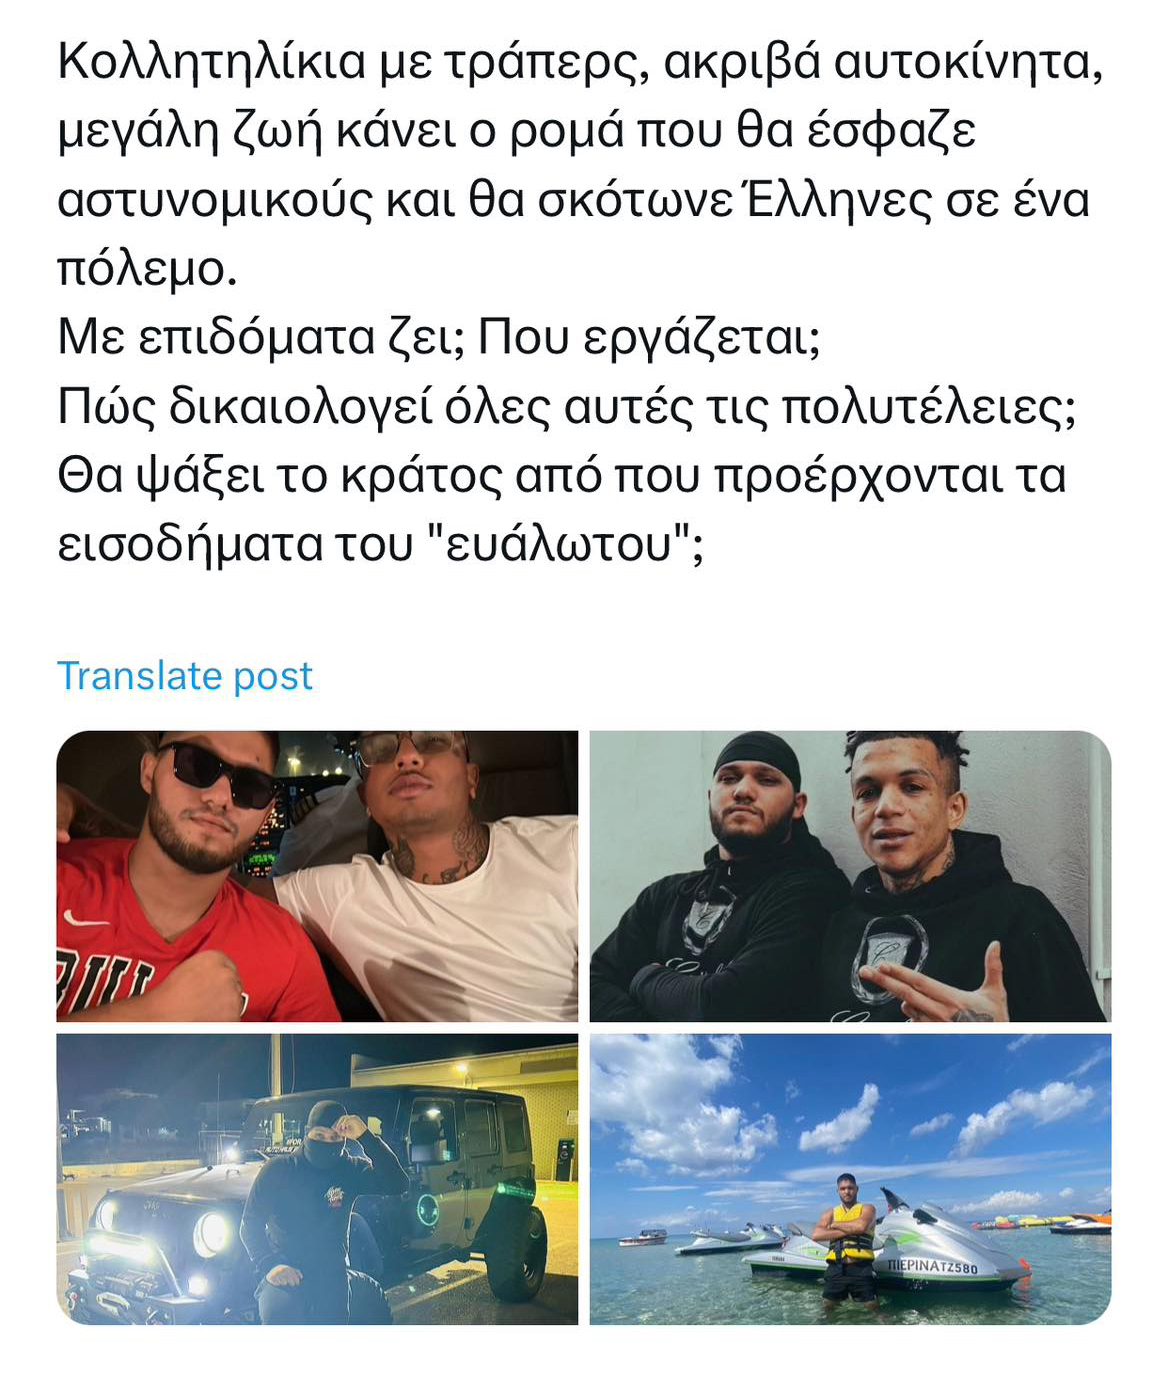 Φωτογραφίες με τράπερς, χλιδάτη ζωή: Οργή για τον νεαρό Ρομά που απειλεί να σκοτώσει αστυνομικούς και Έλληνες (Pics)